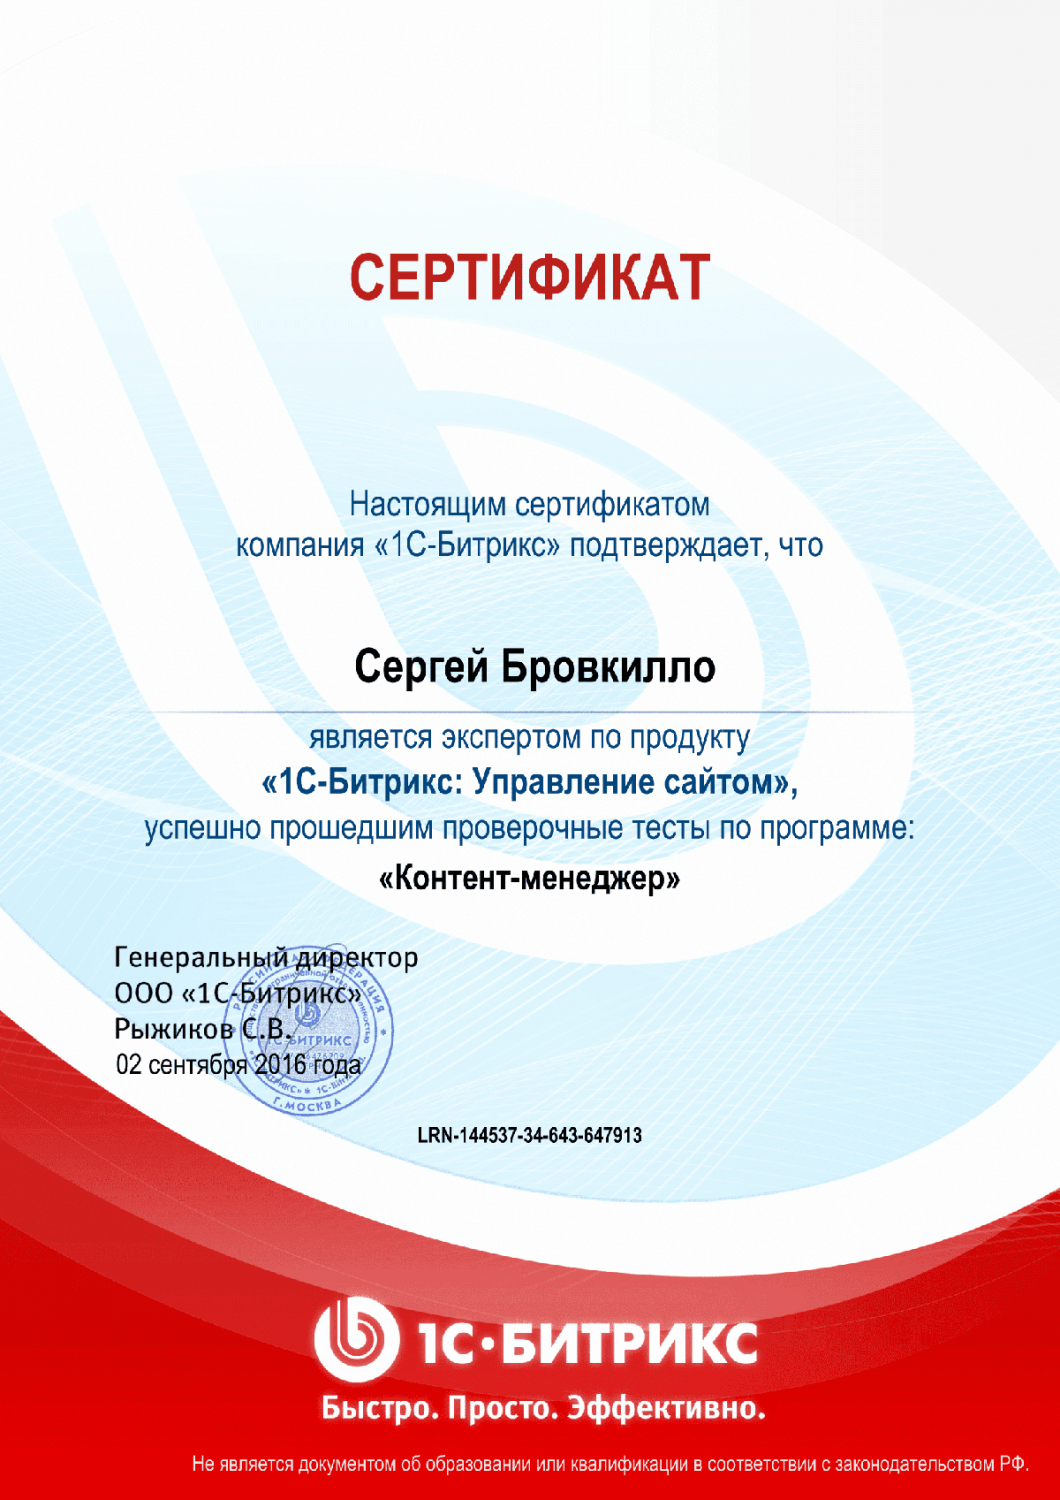 Сертификат эксперта по программе "Контент-менеджер"" в Омска